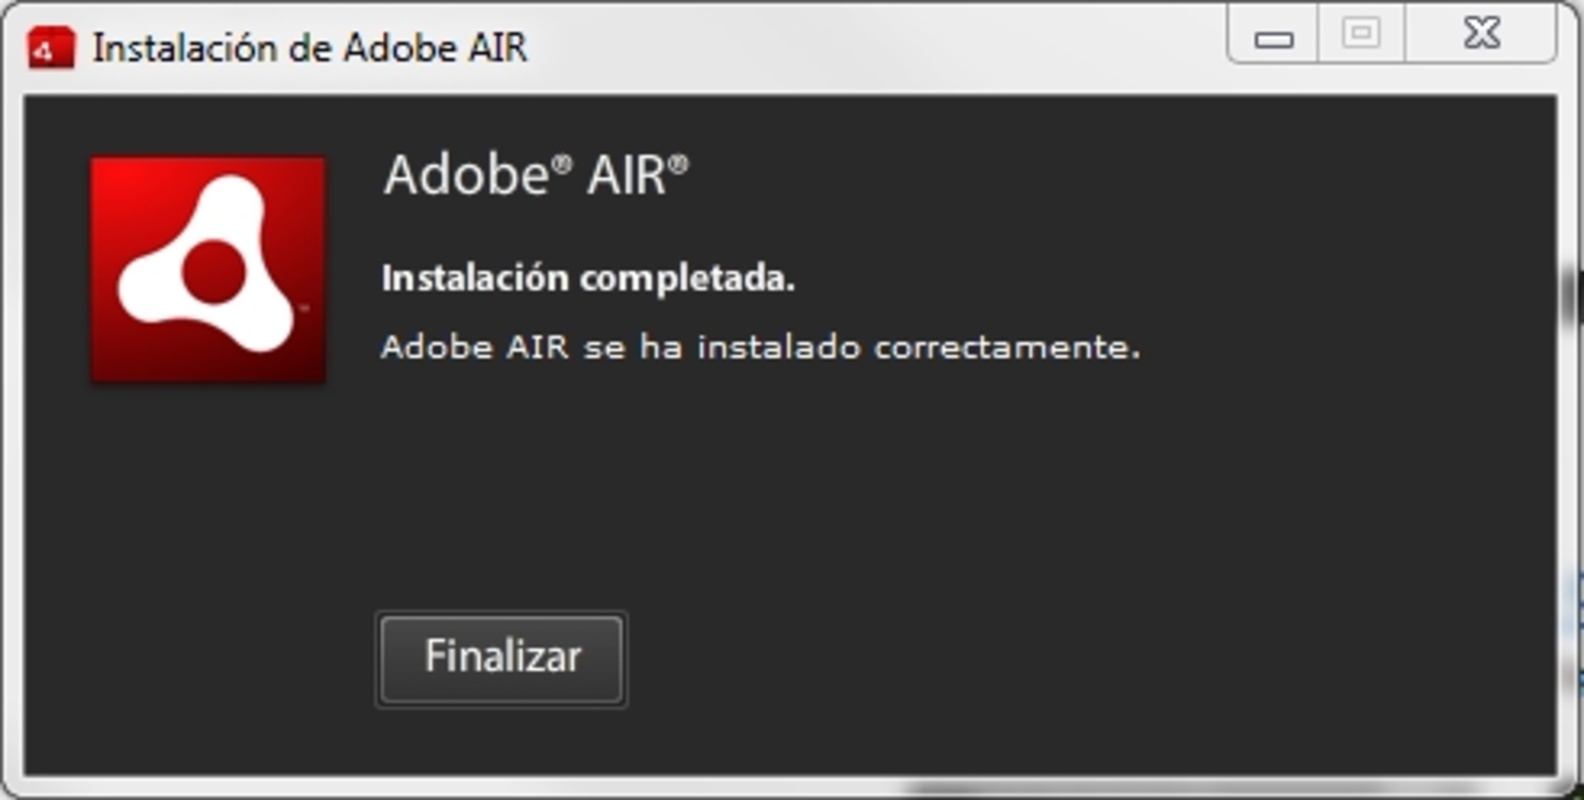 Adobe AIR 50.2.1.1 feature